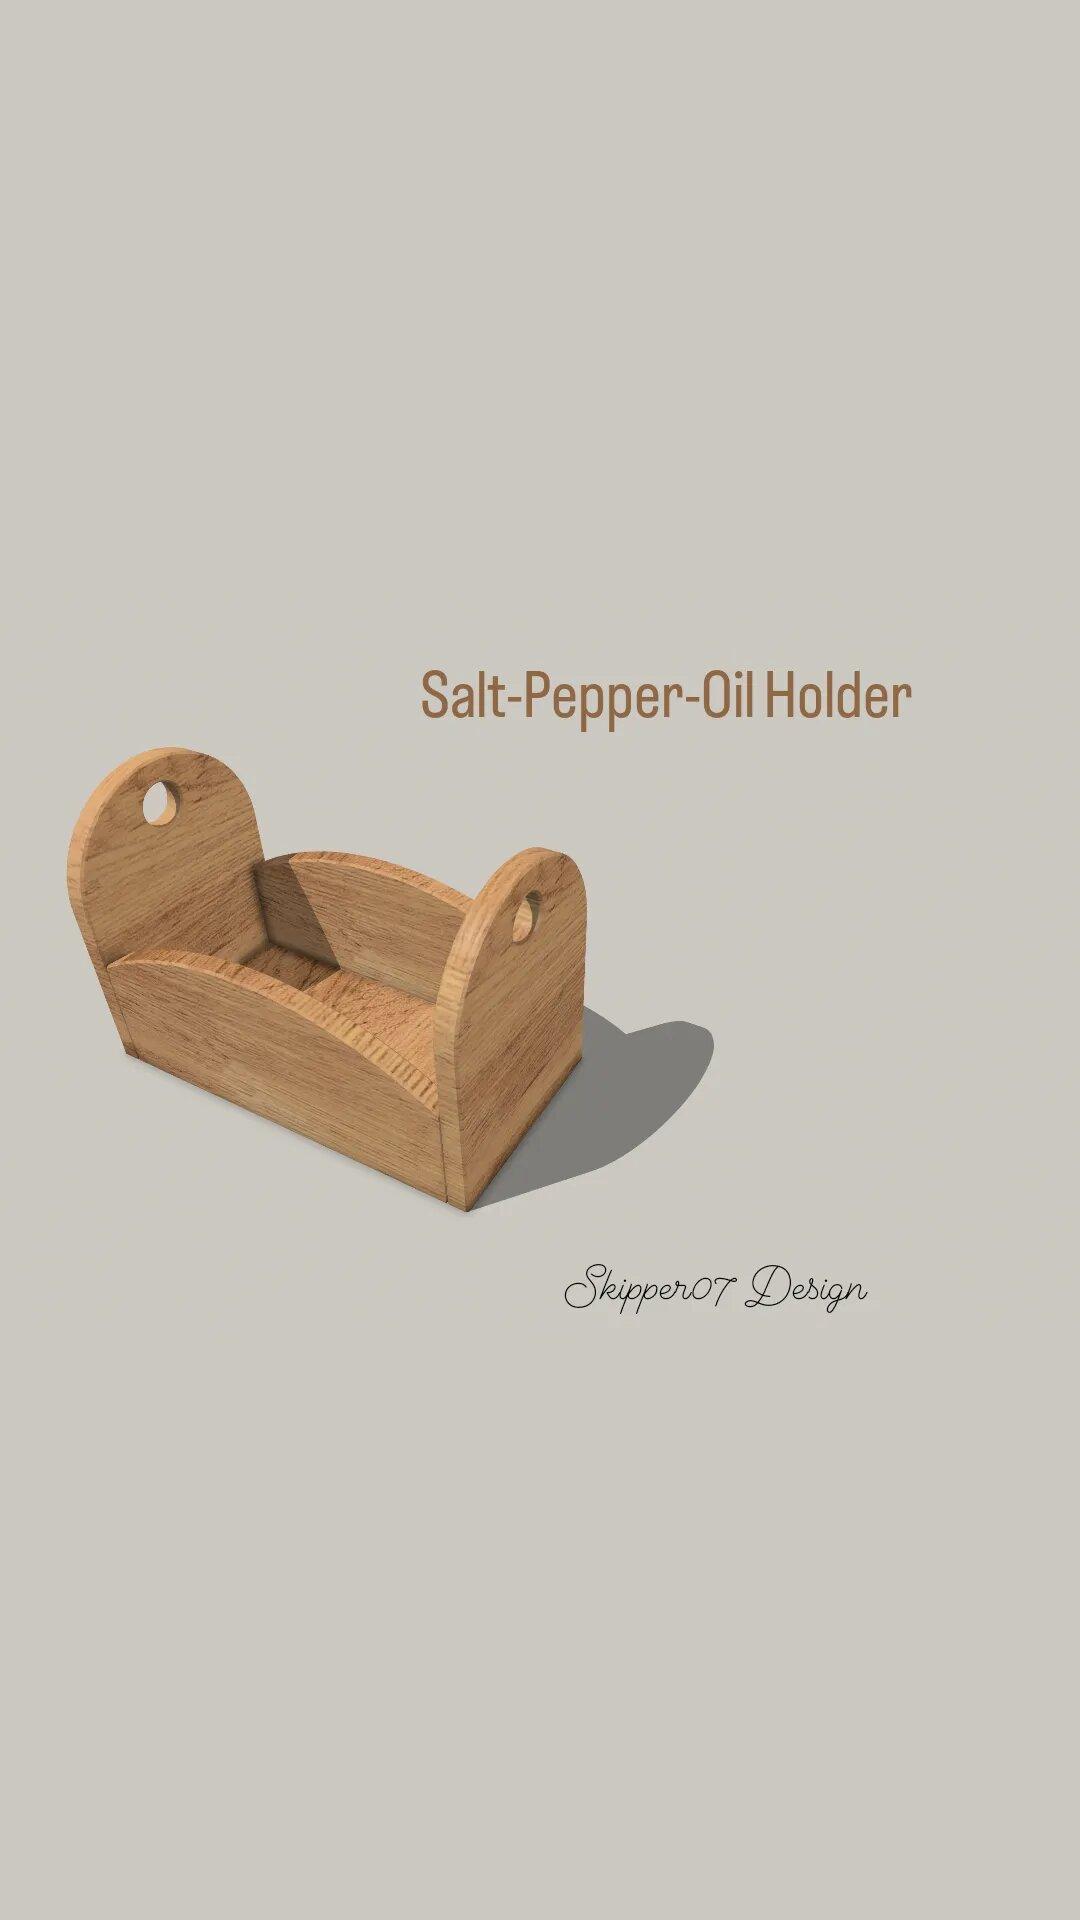 Salt-Pepper-Oil Holder 2.0.stl 3d model